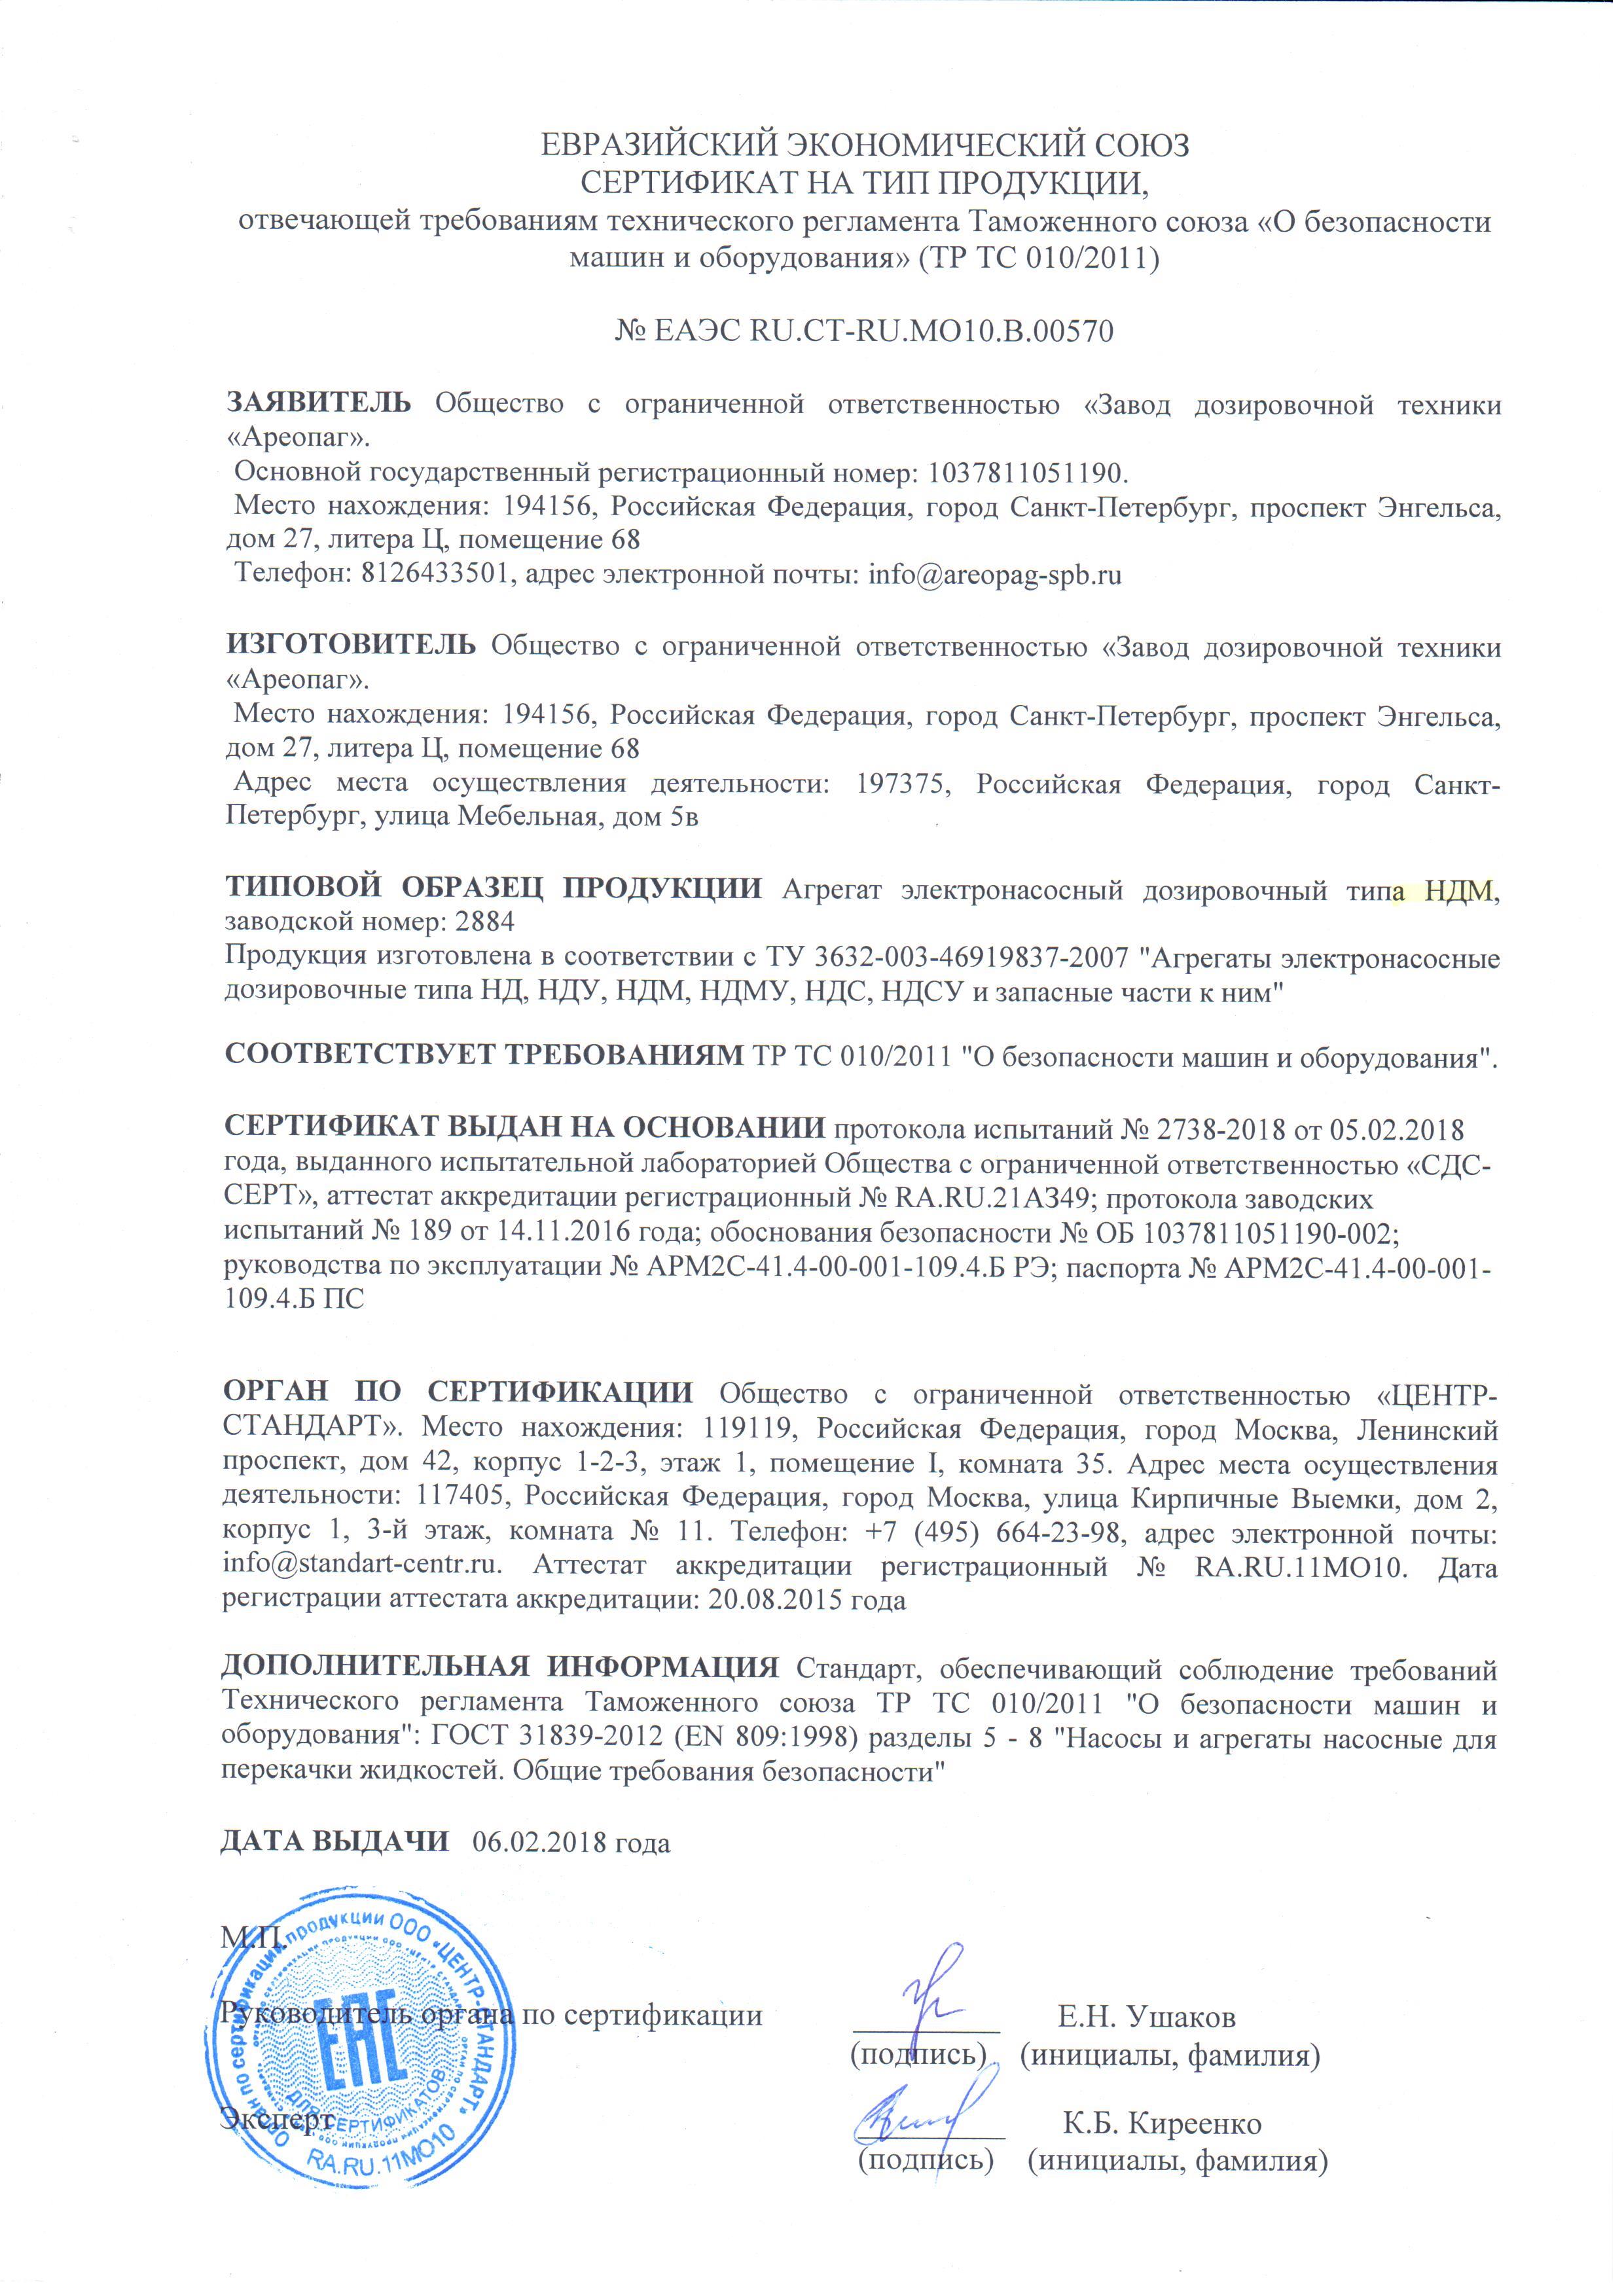 Сертификат на тип продукции № ЕАЭС RU.CT-RU. MO10.В.00570. Агрегат электронасосный дозировочный типа НДМ, зав.номер 2884